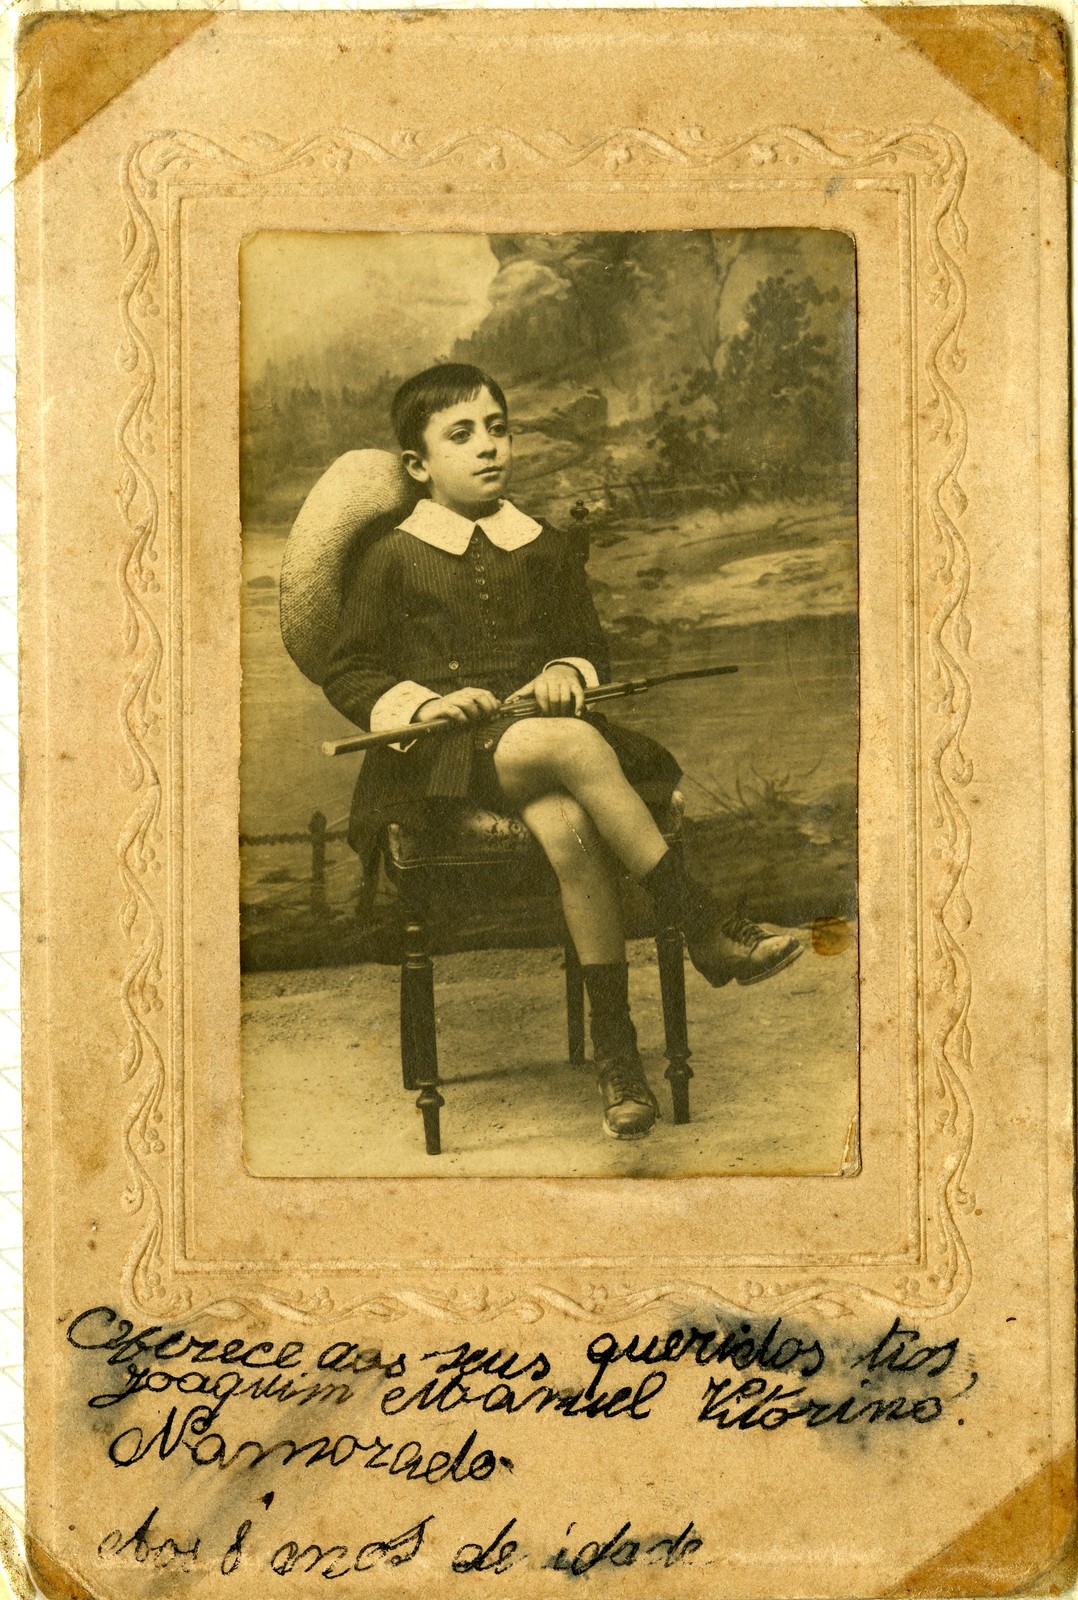 Joaquim Namorado aos 8 anos de idade, Alter do Chão, 1922.